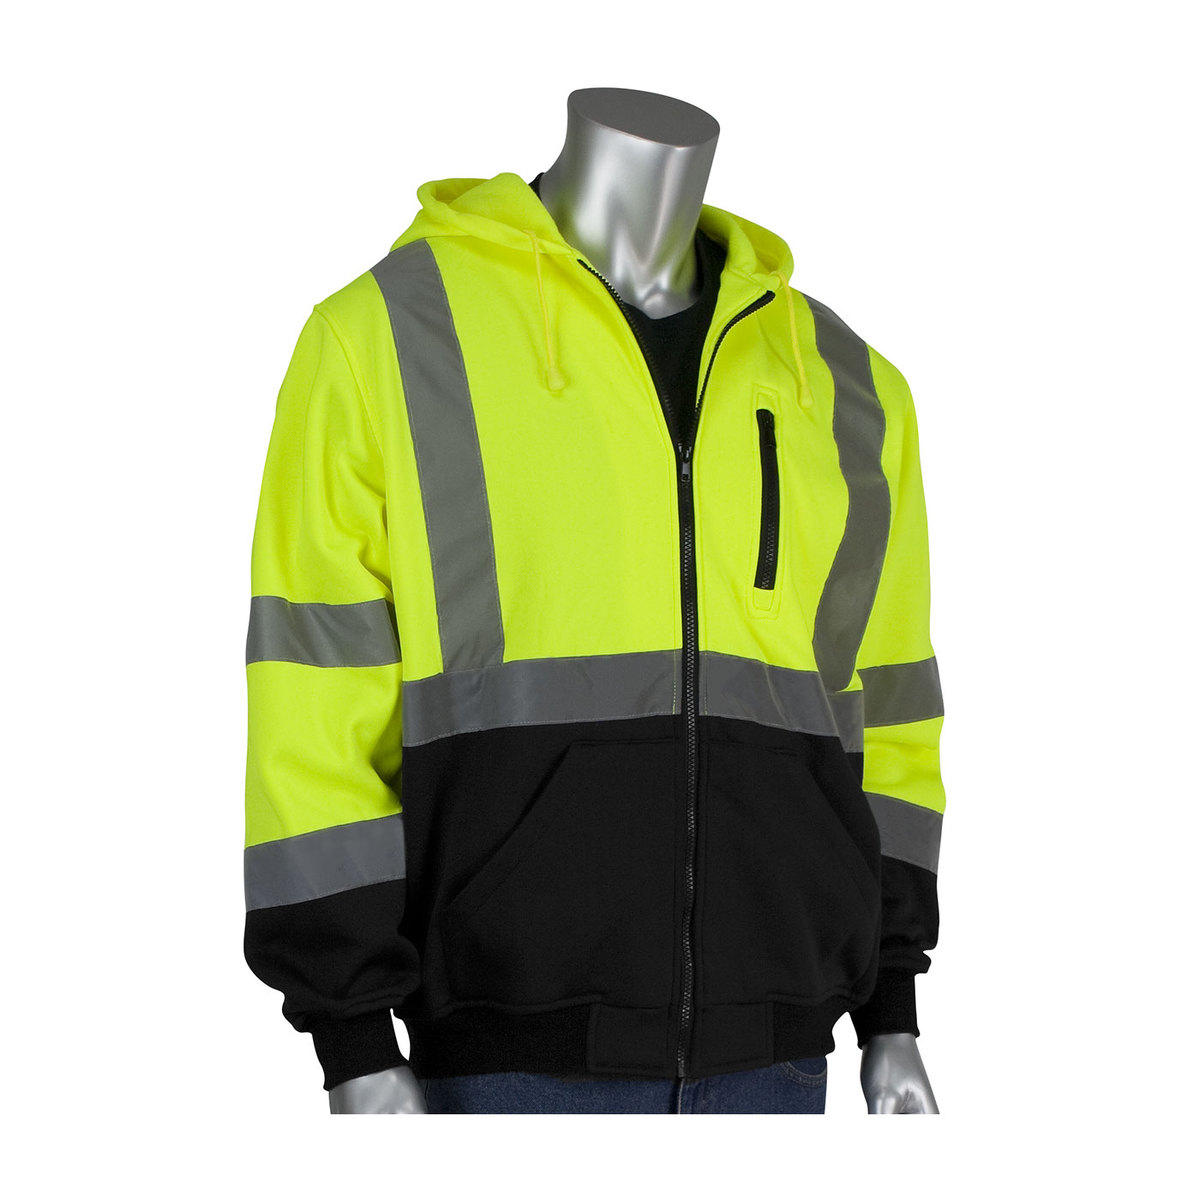 PIP® 3X Hi-Viz Yellow/Black Polyester/Fleece Hooded Sweatshirt